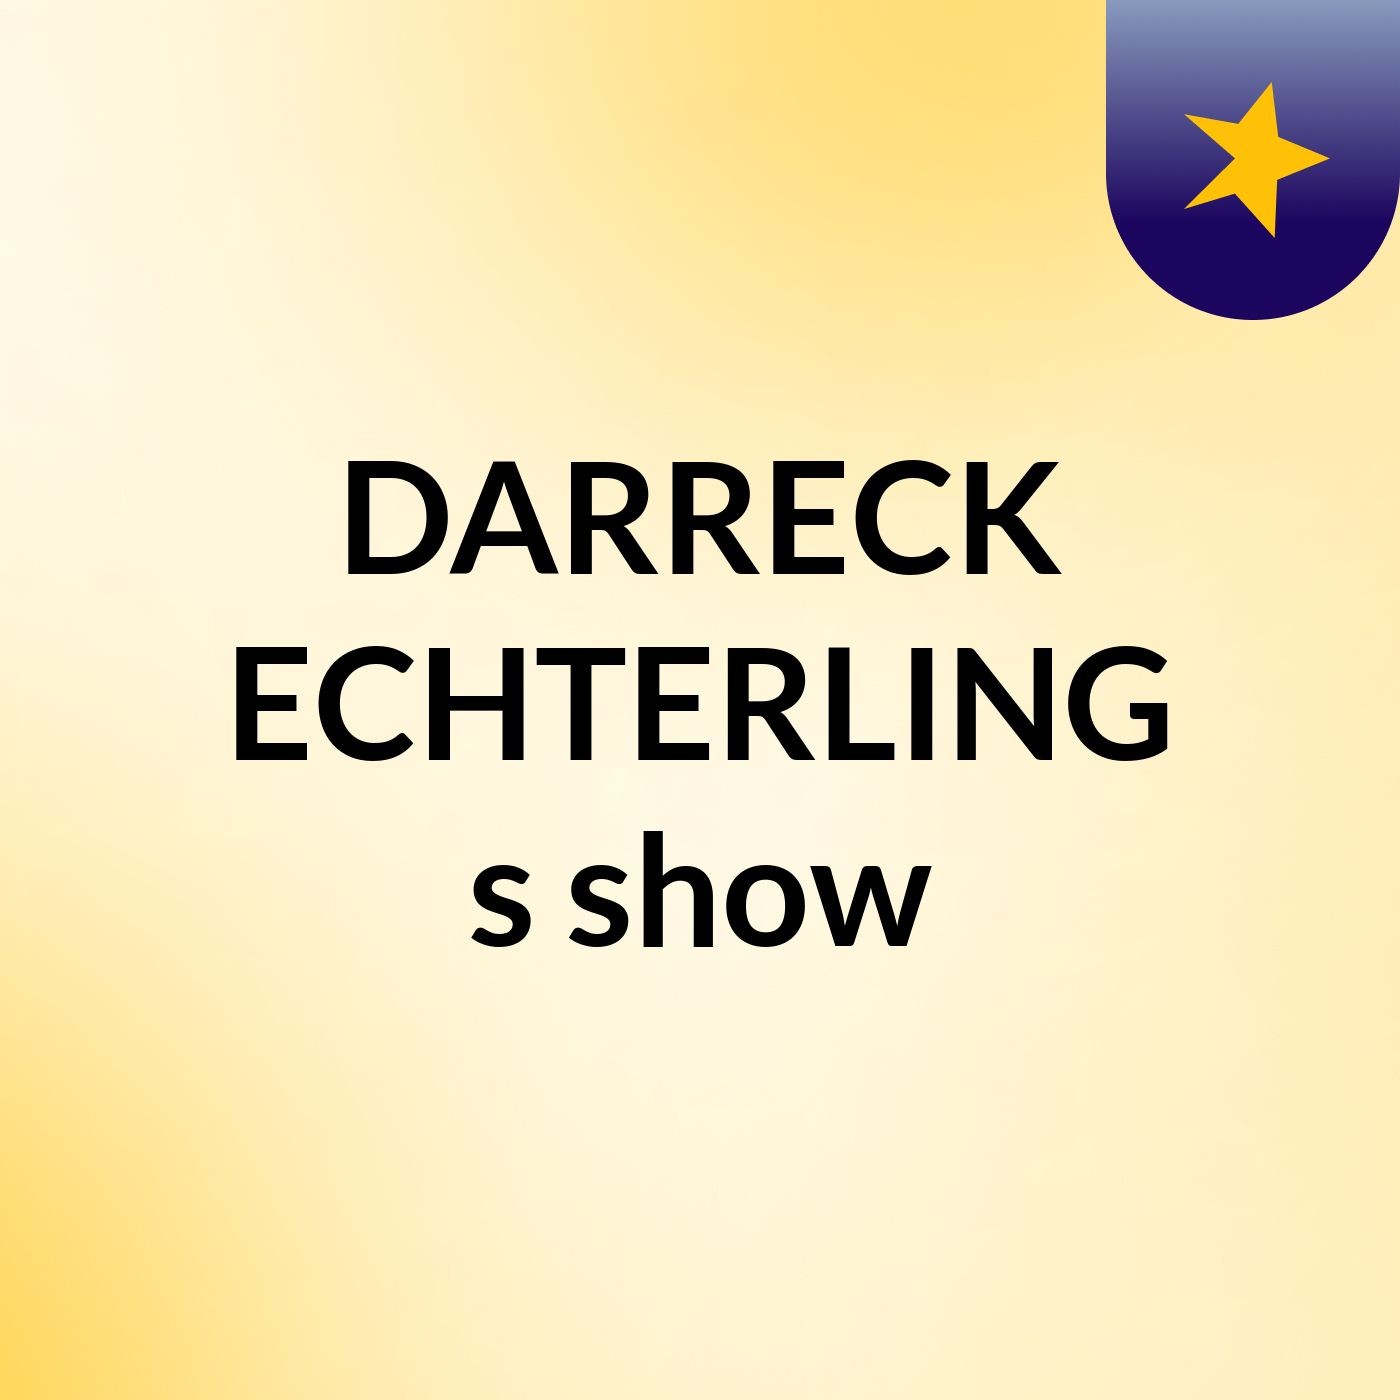 DARRECK ECHTERLING's show